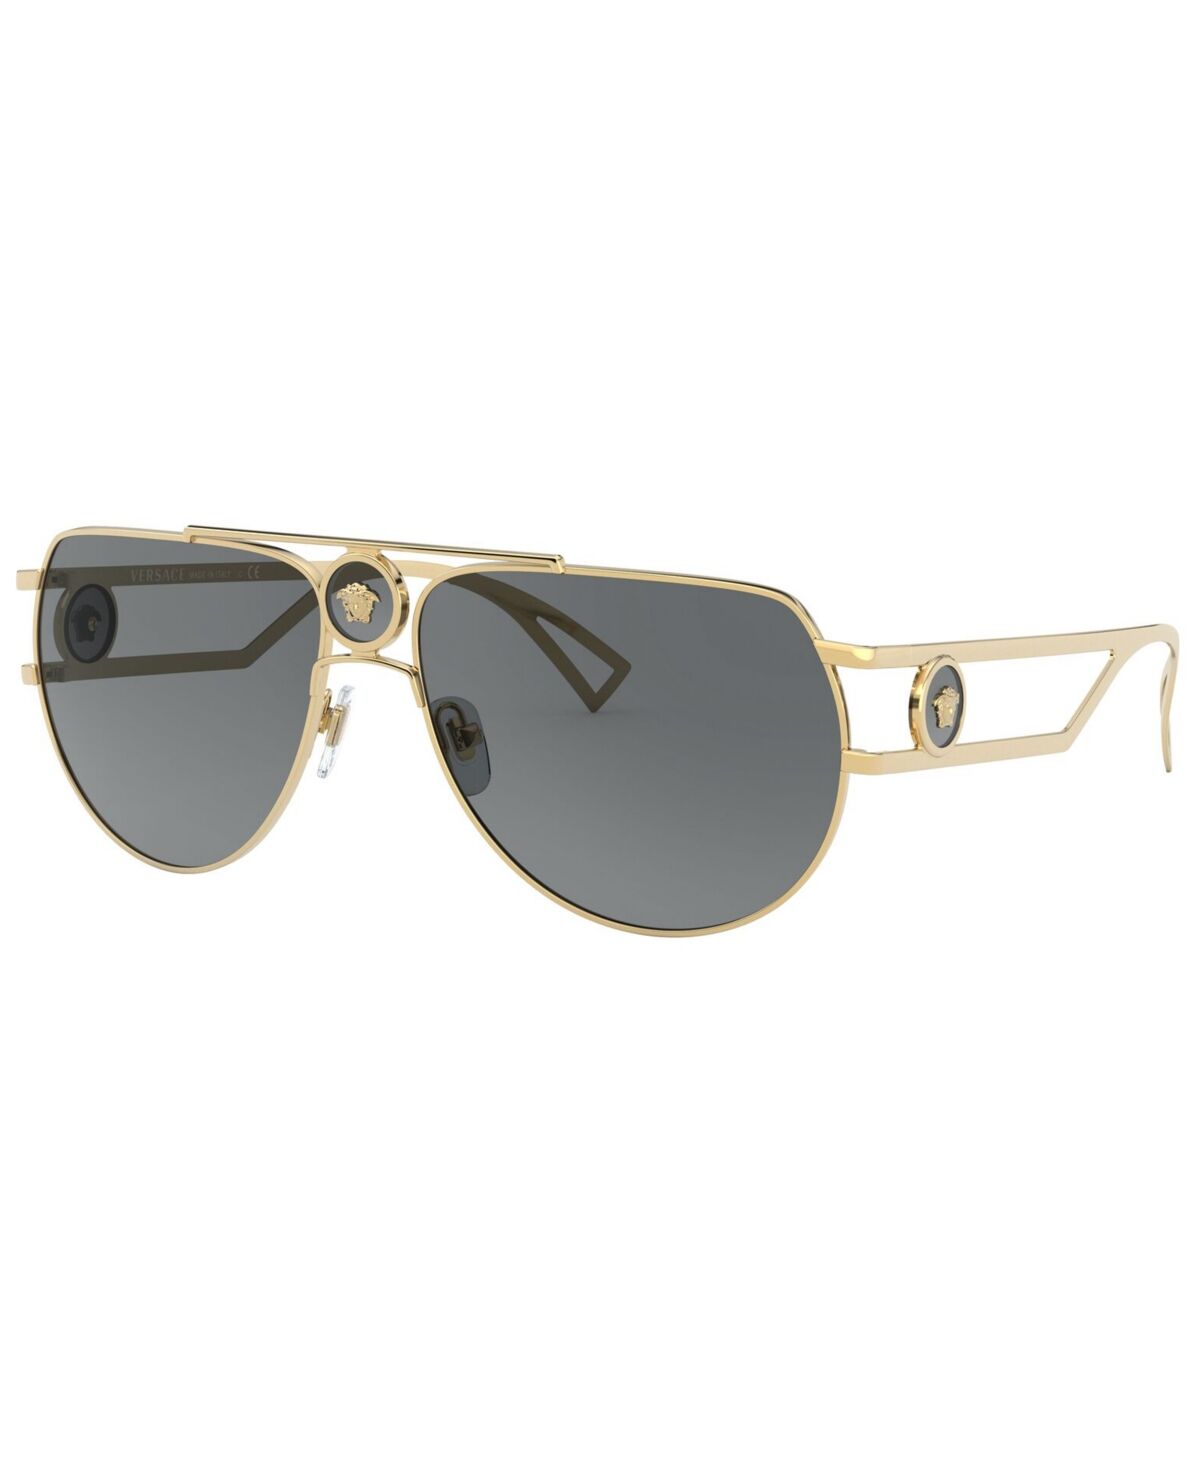 Versace Men's Sunglasses, VE2225 - GOLD/GREY